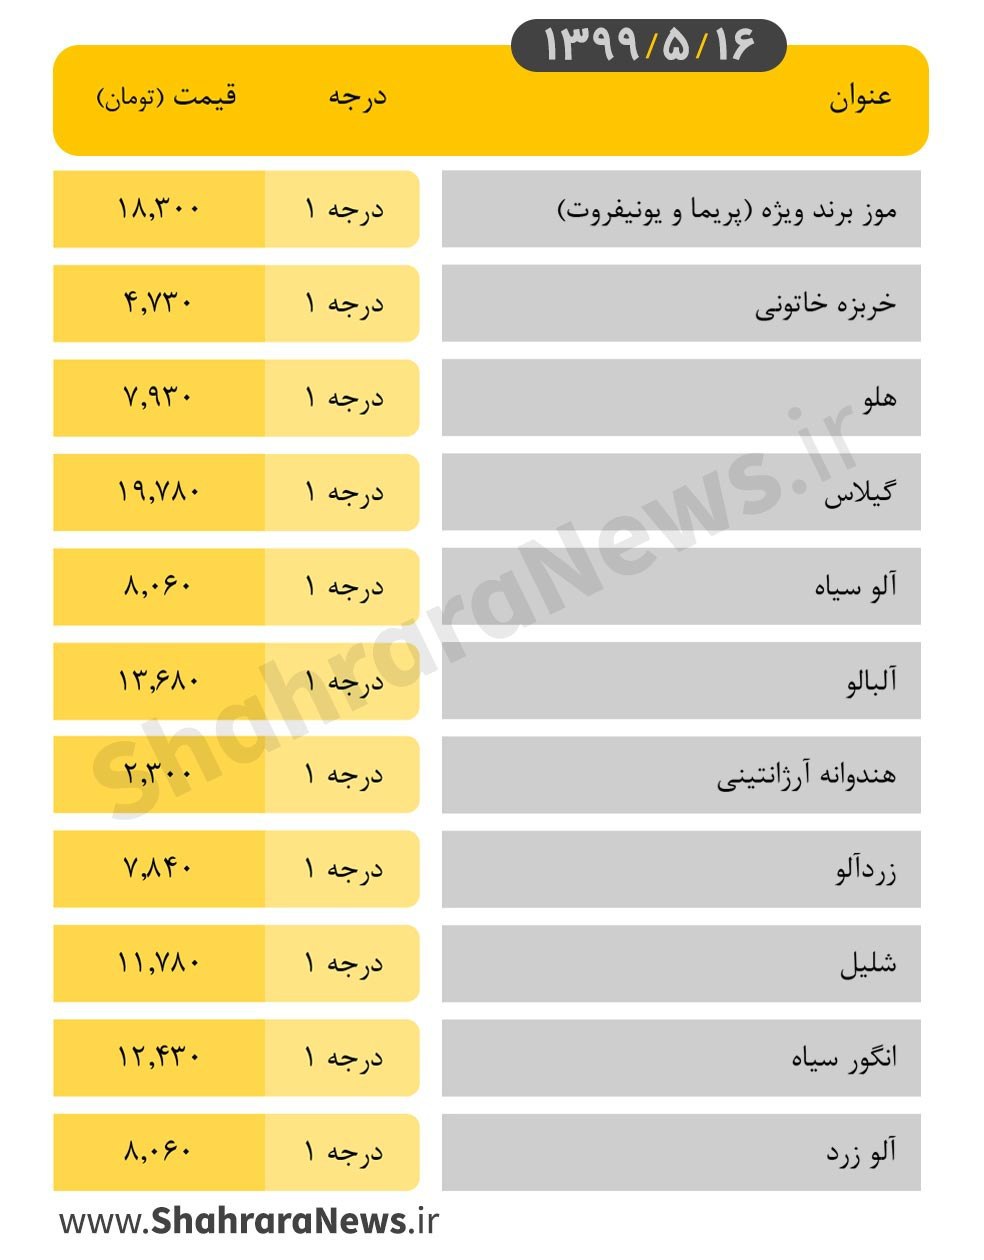 نرخ انواع میوه در روزبازارهای شهرداری مشهد امروز ۱۶ مرداد + جدول